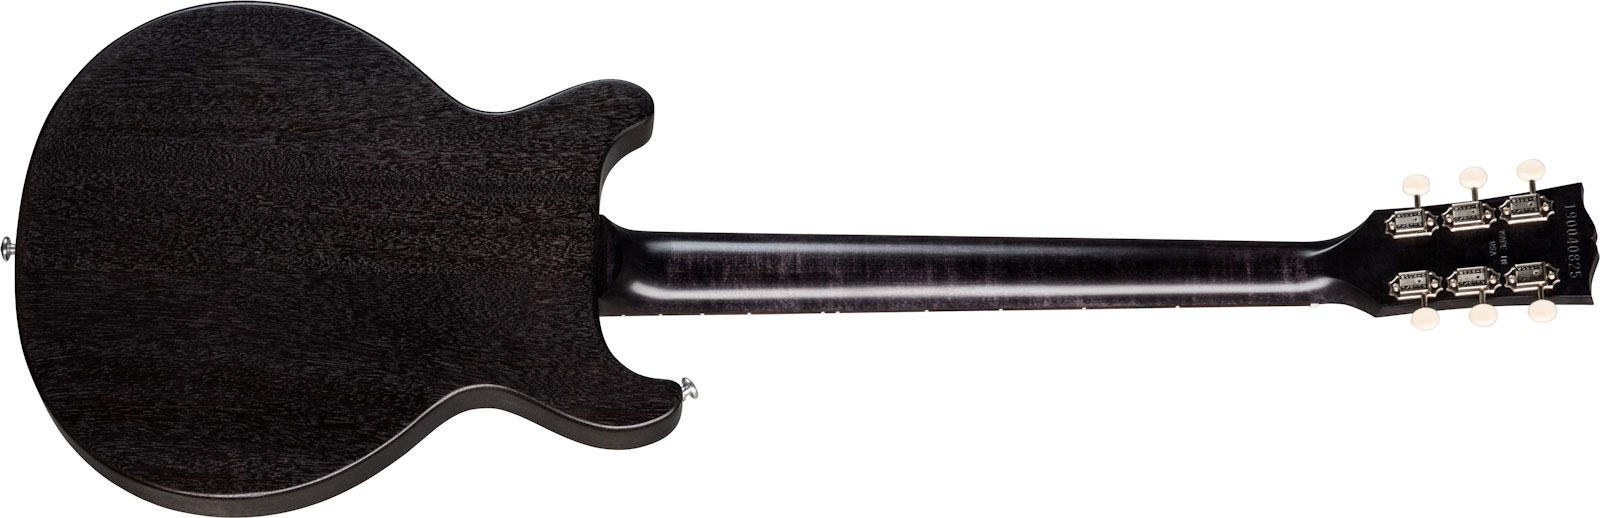 Gibson Les Paul Special Tribute Dc Modern P90 - Worn Ebony - Guitarra eléctrica de doble corte - Variation 1